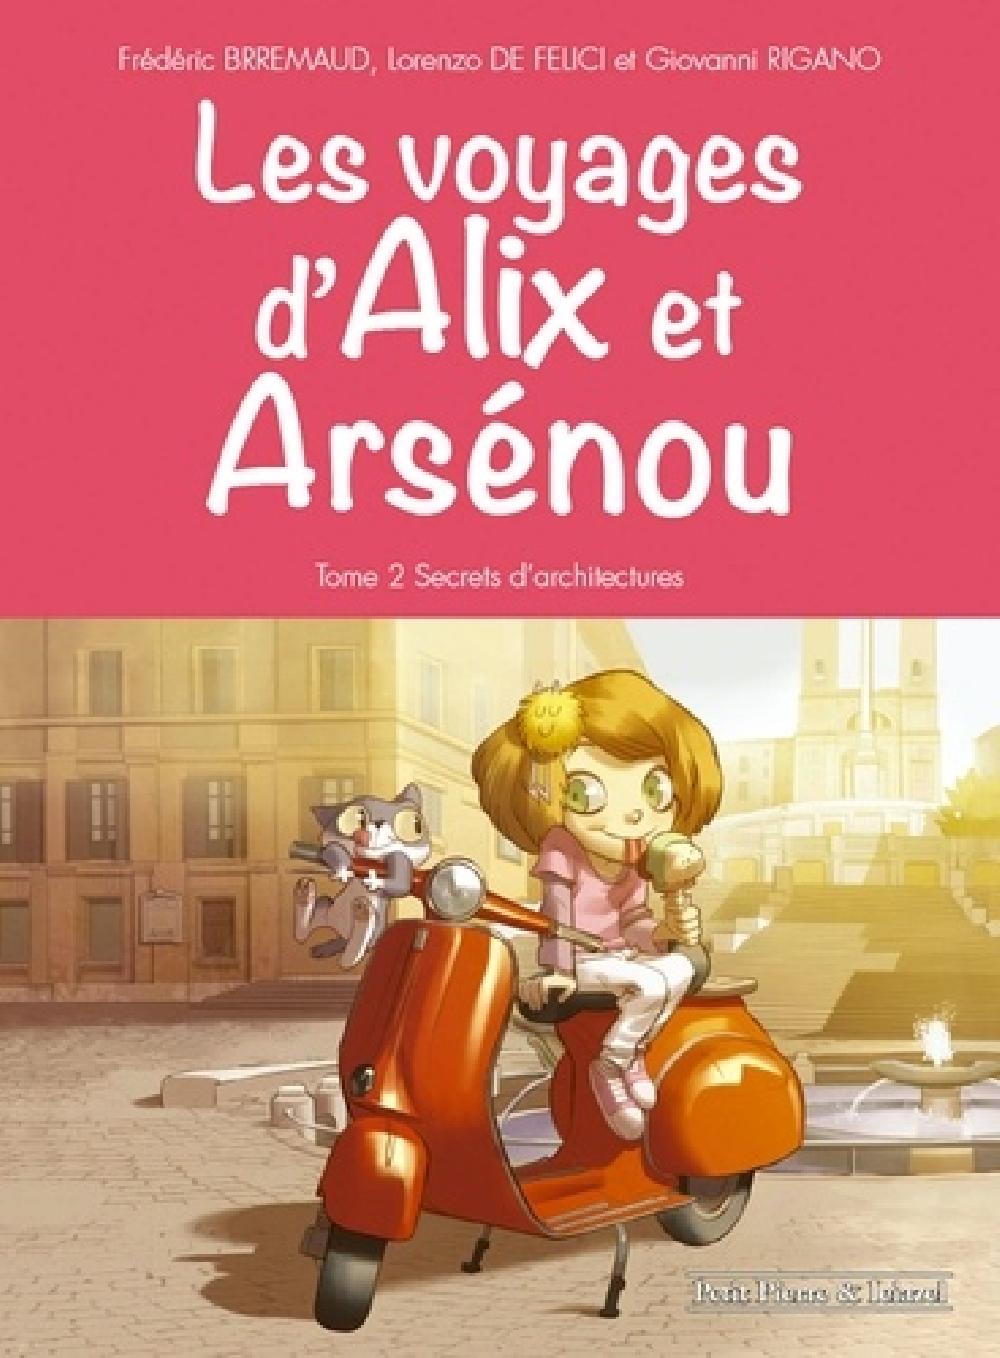 Les voyages d'Alix et Arsenou